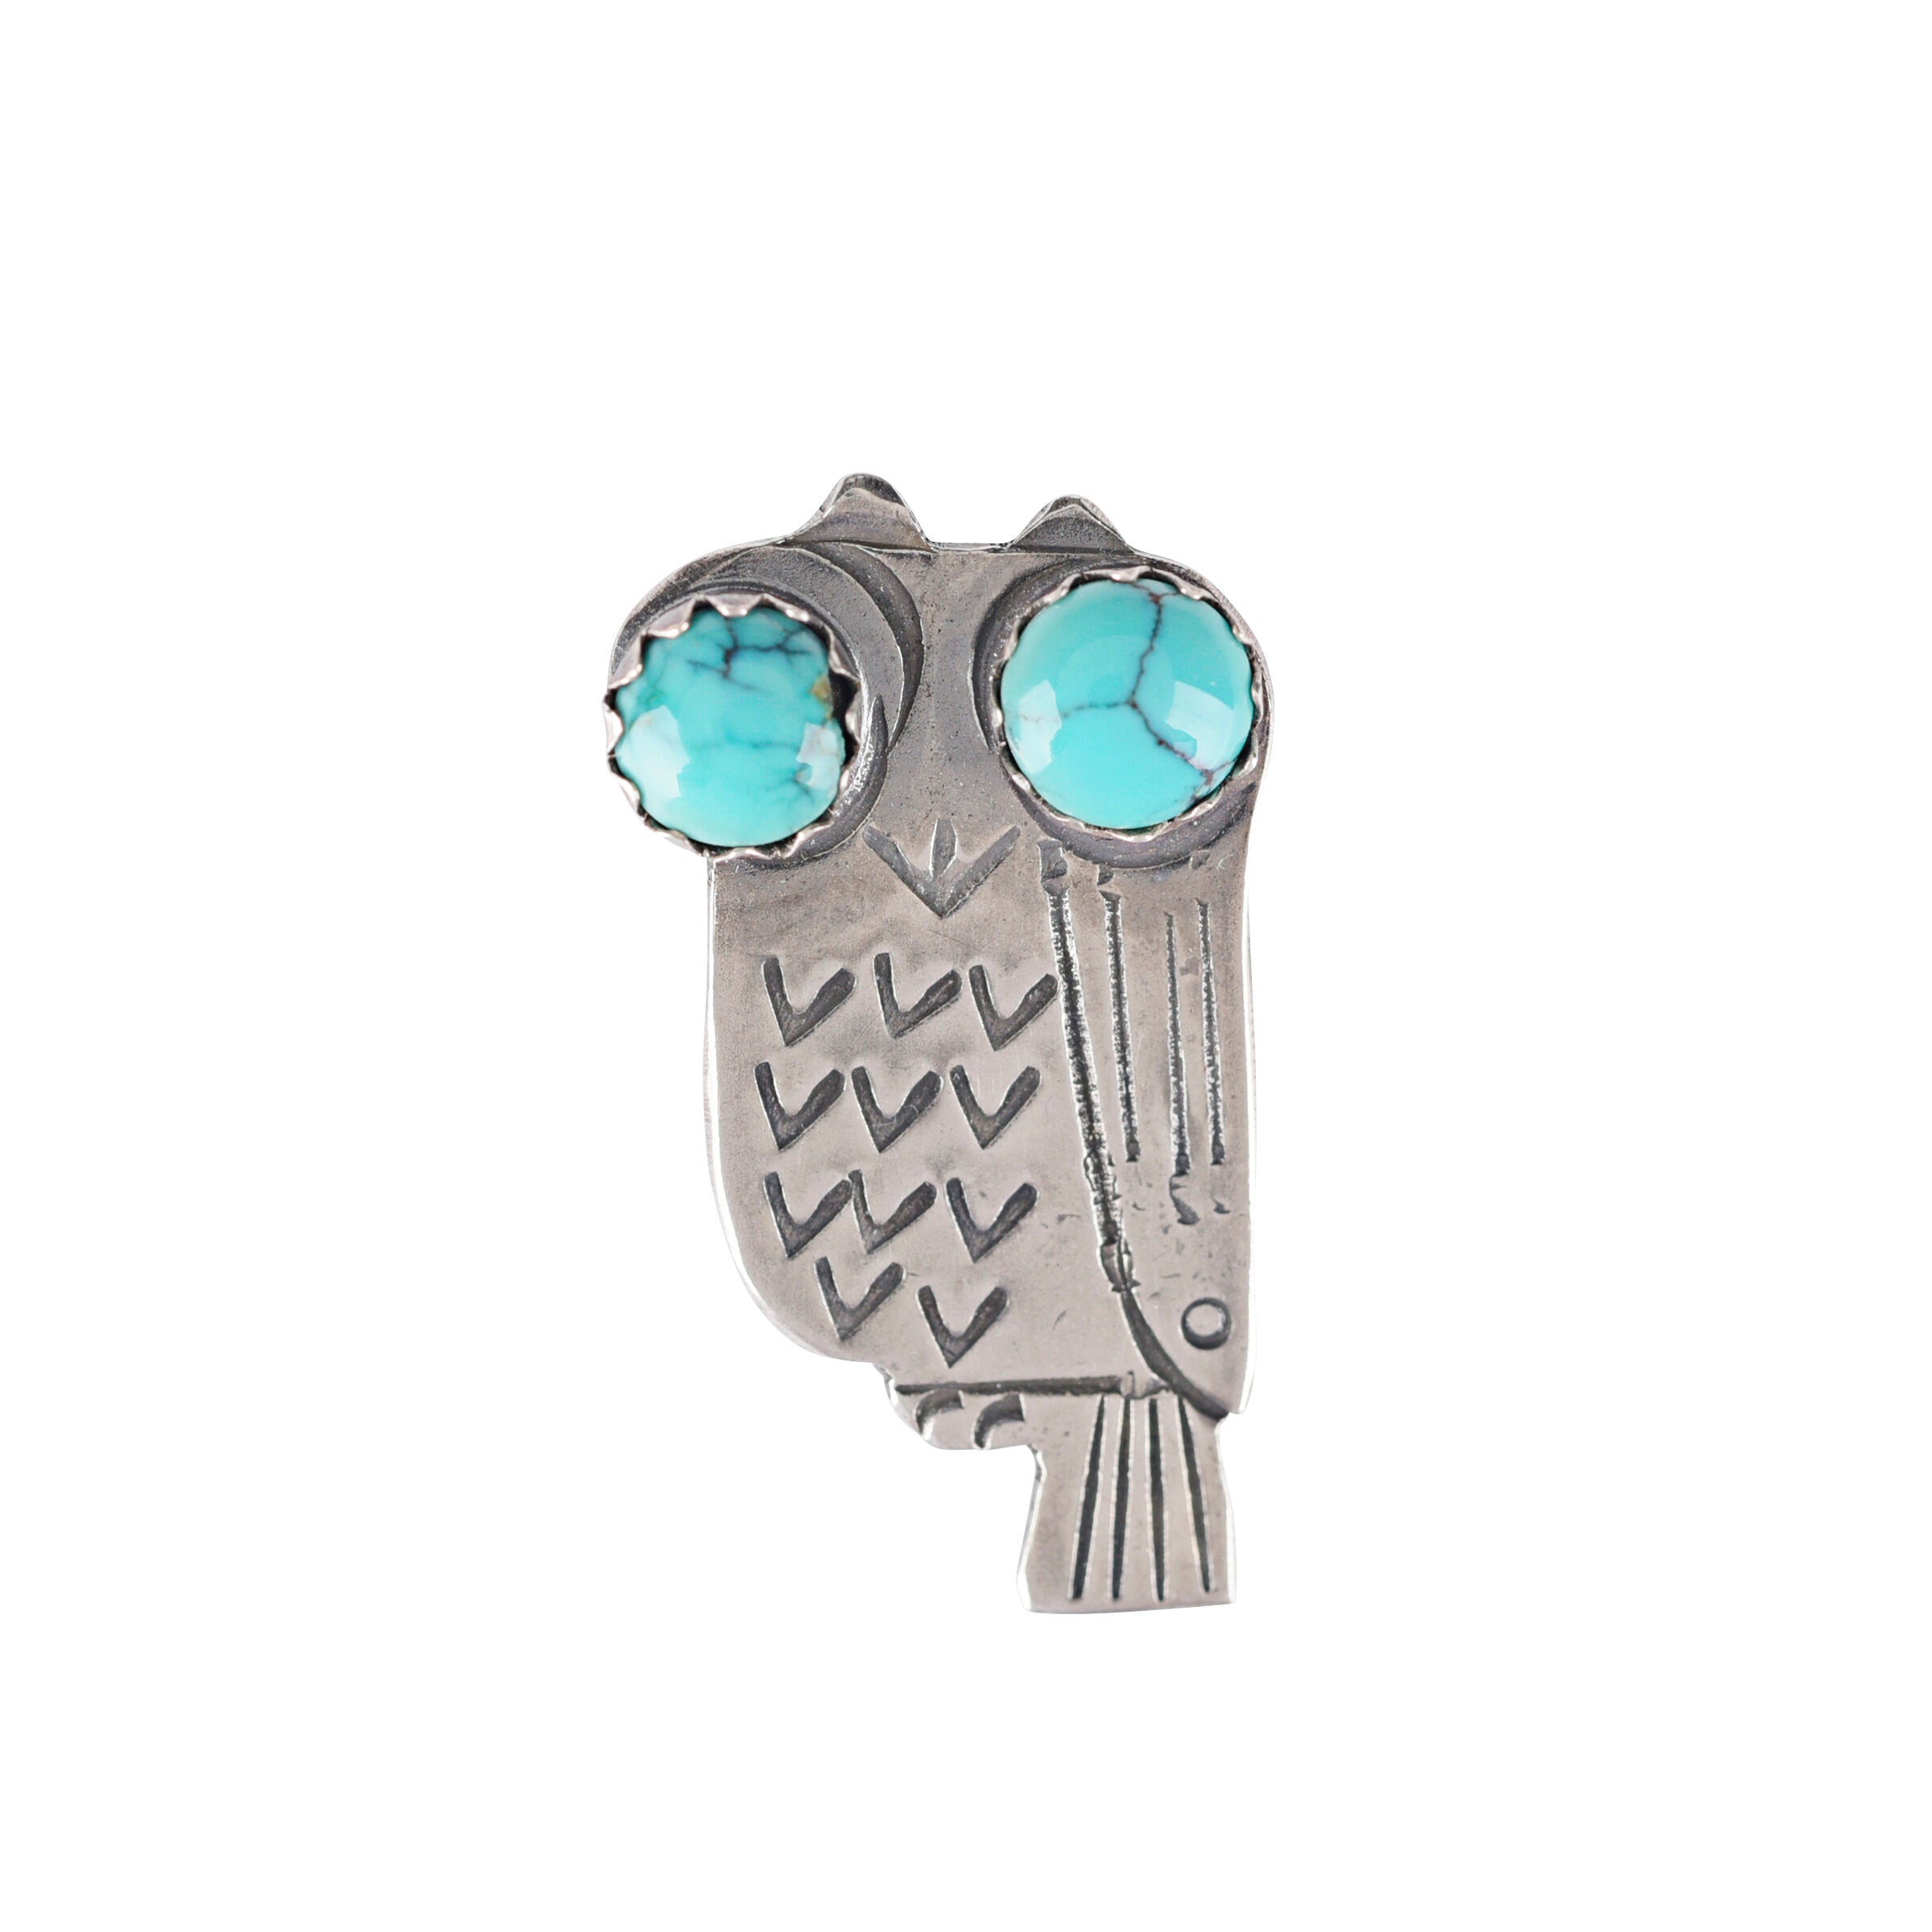 Joe Eby Night Owl Pin